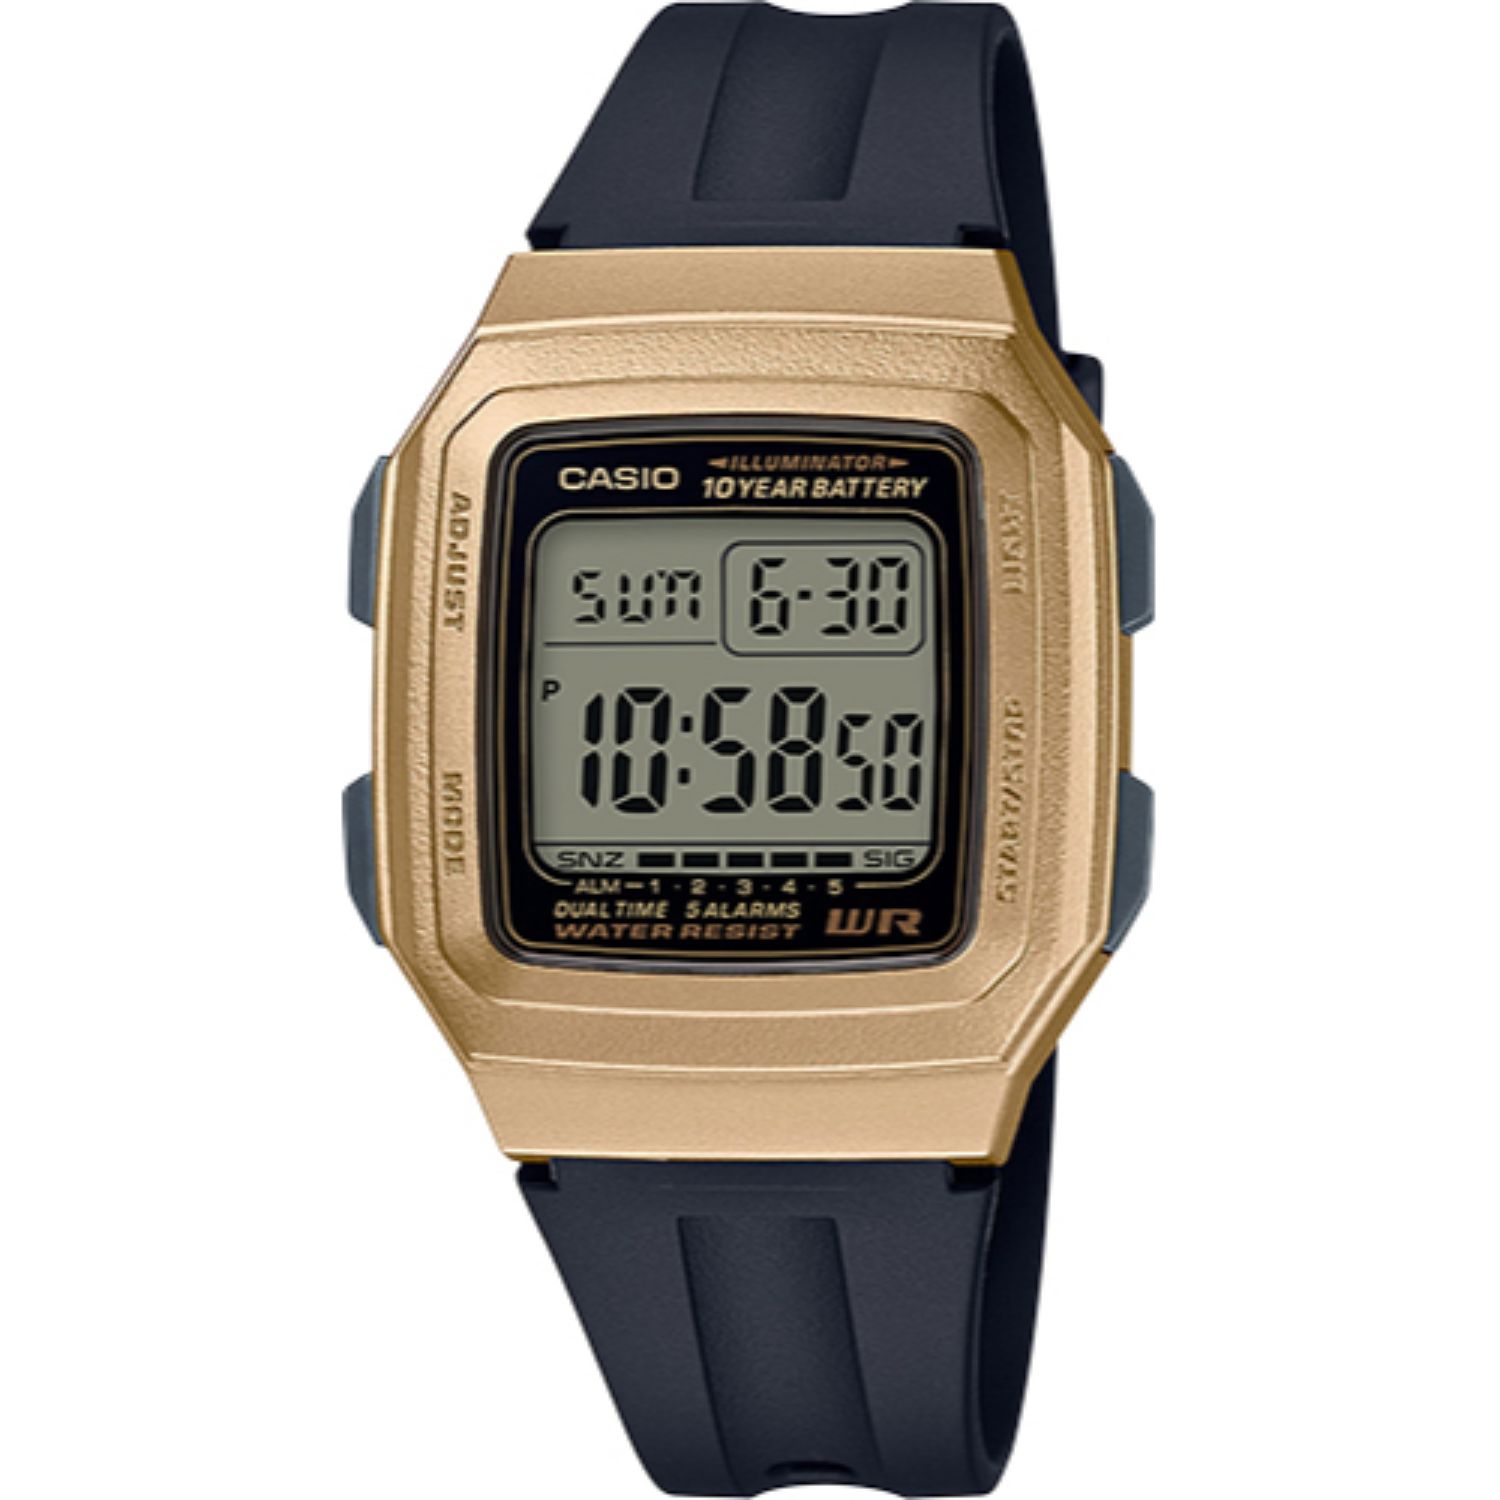 Casio Men's Classic Digital Watch, Gold Tone Metallic Case F201WAM-9A 